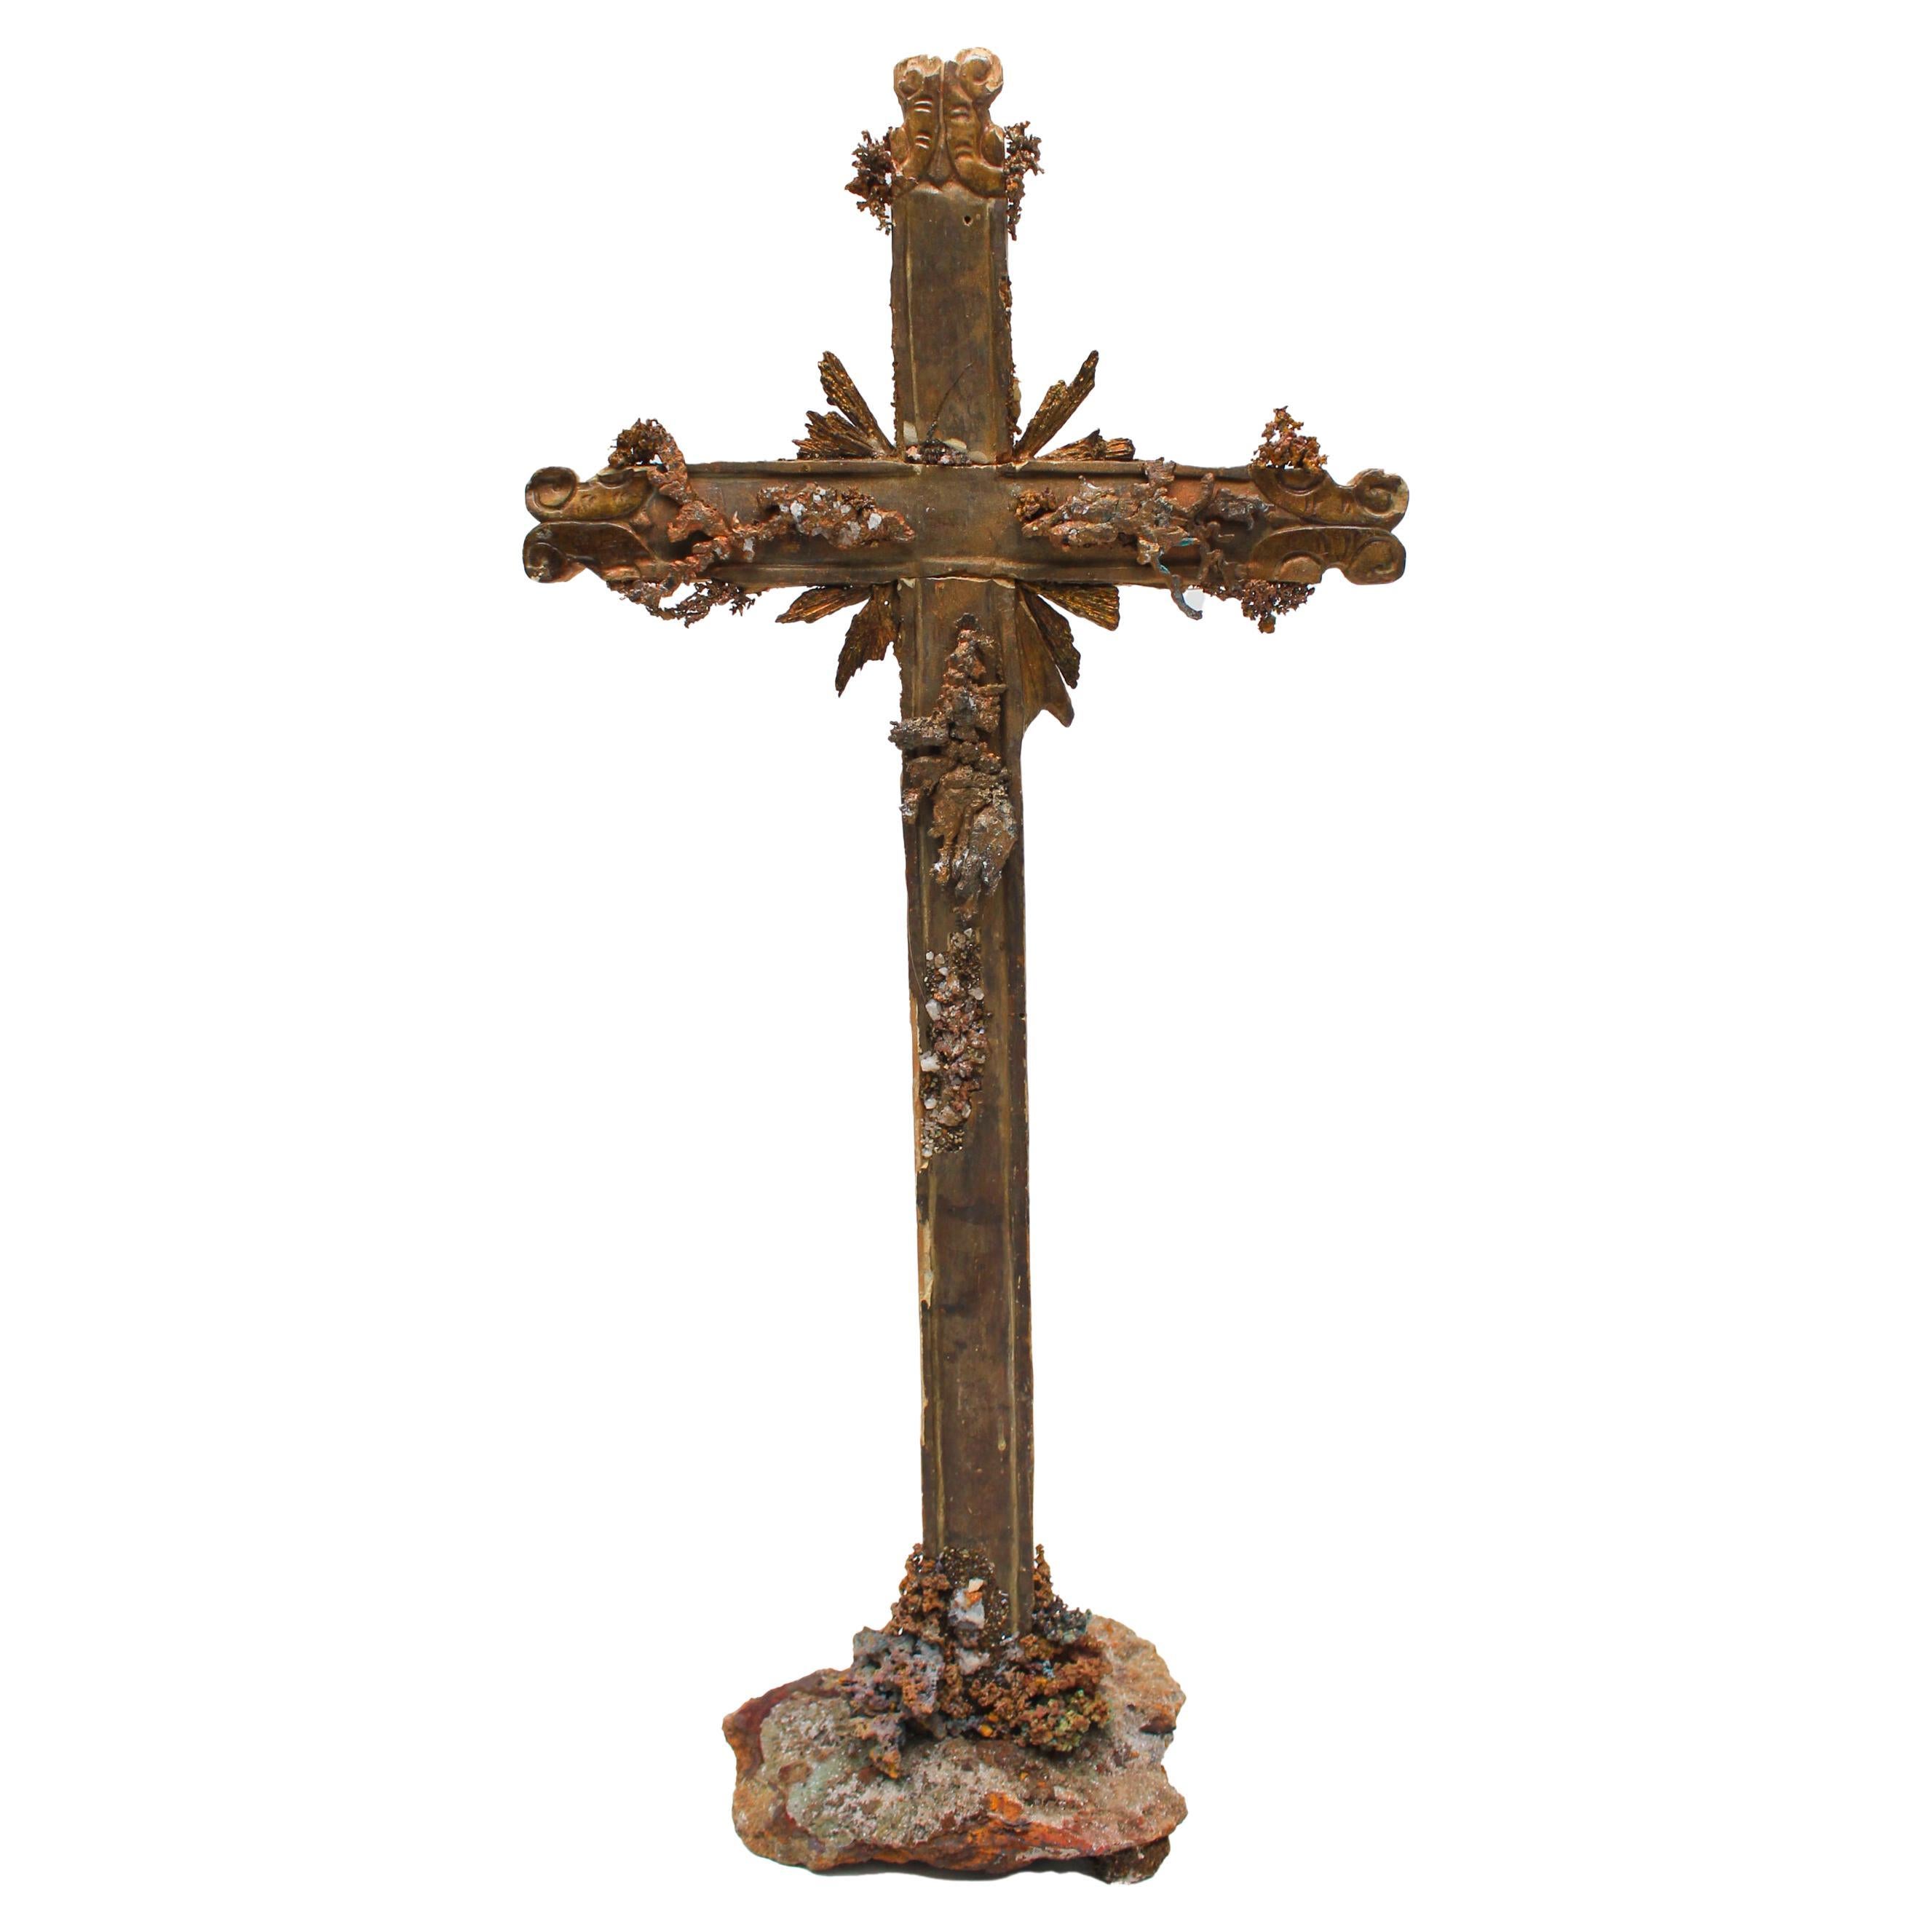 Croix italienne du 18ème siècle ornée de cuivre indigène avec des cristaux et de Kyanite